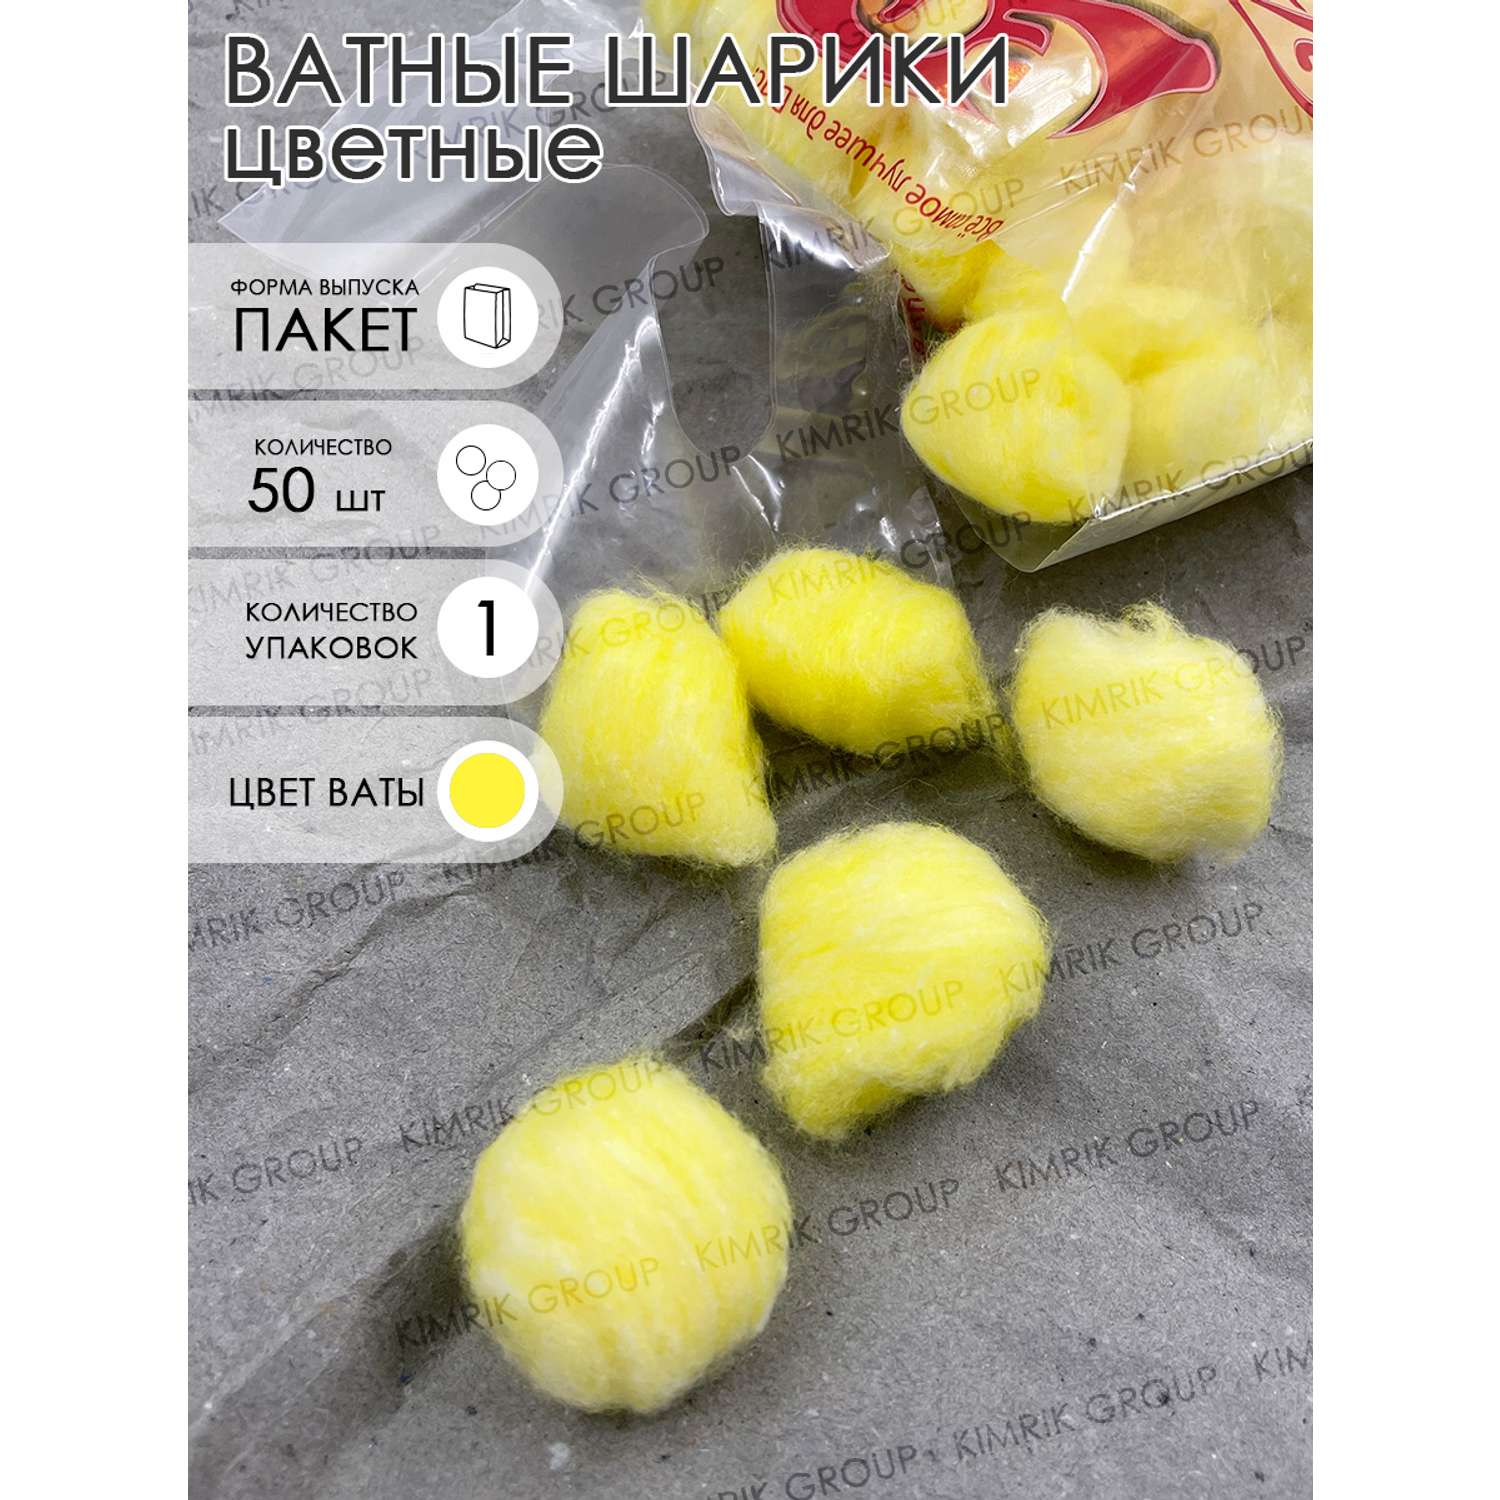 Ватные шарики Емельянъ Савостинъ цветные косметические желтые 50 шт - фото 3